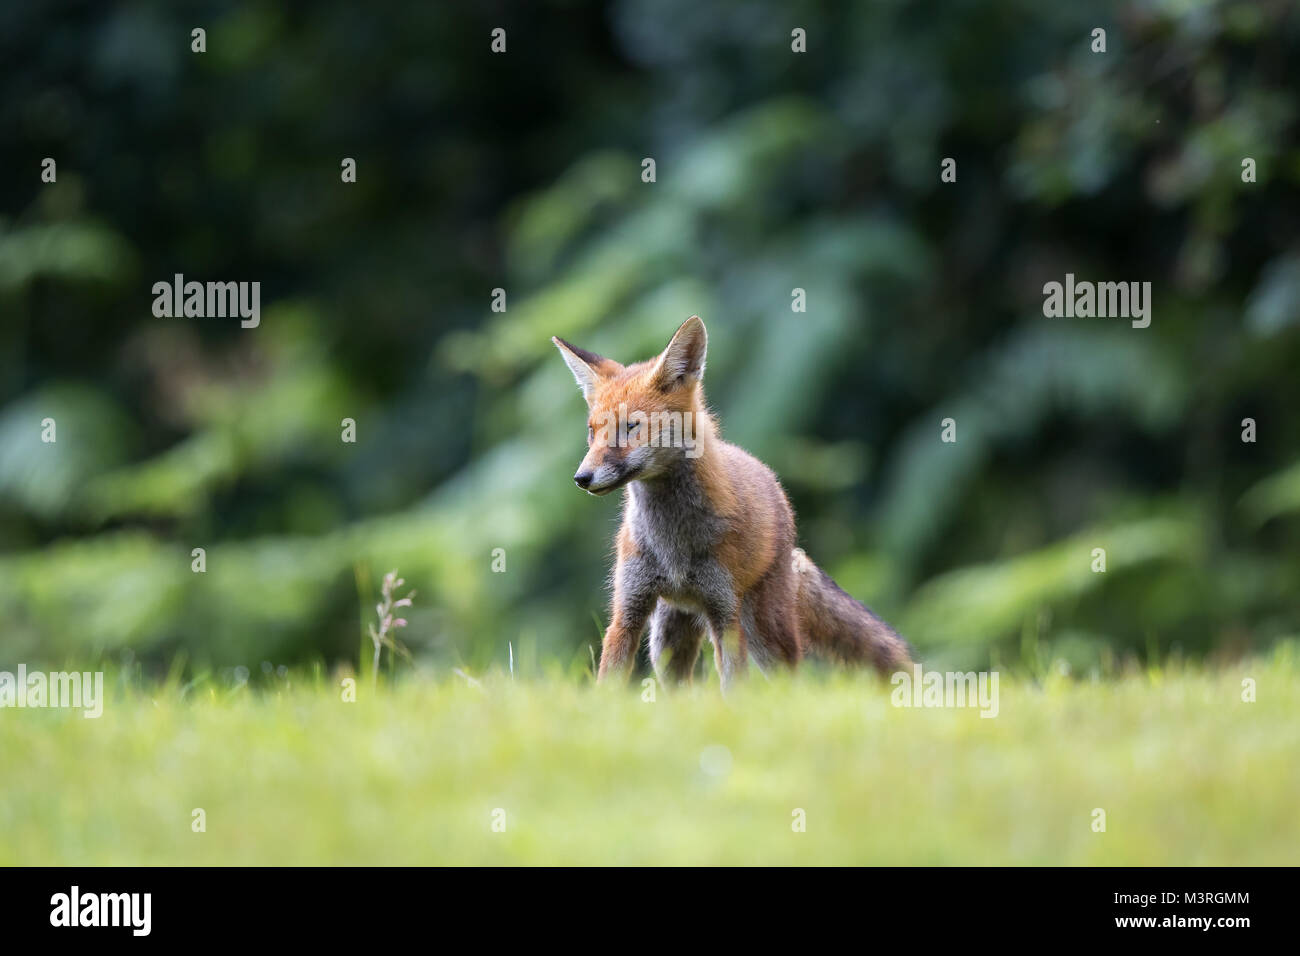 Vista frontale e ad angolo basso di un cucciolo di volpe rosso (Vulpes vulpes) selvaggio del Regno Unito, isolato sull'erba, divertente e allerta. Volpi rosse di paese. Foto Stock